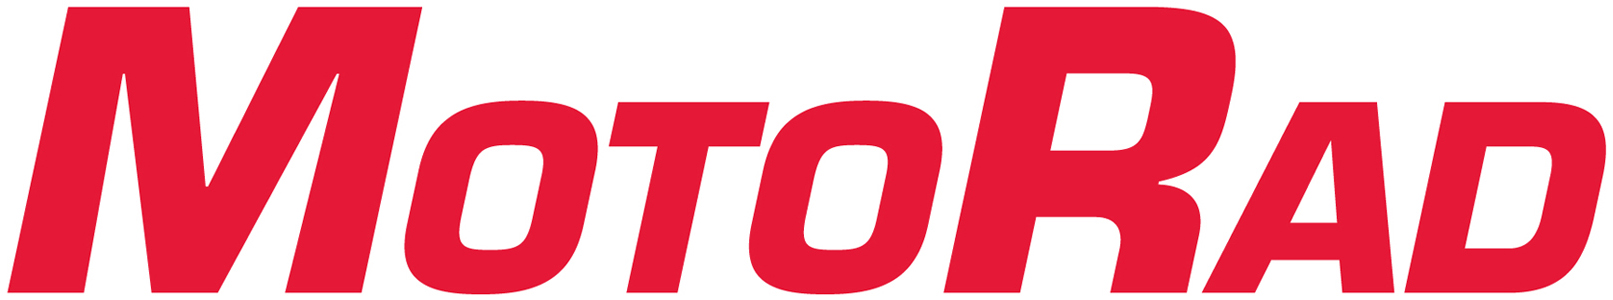 Производитель MOTORAD логотип